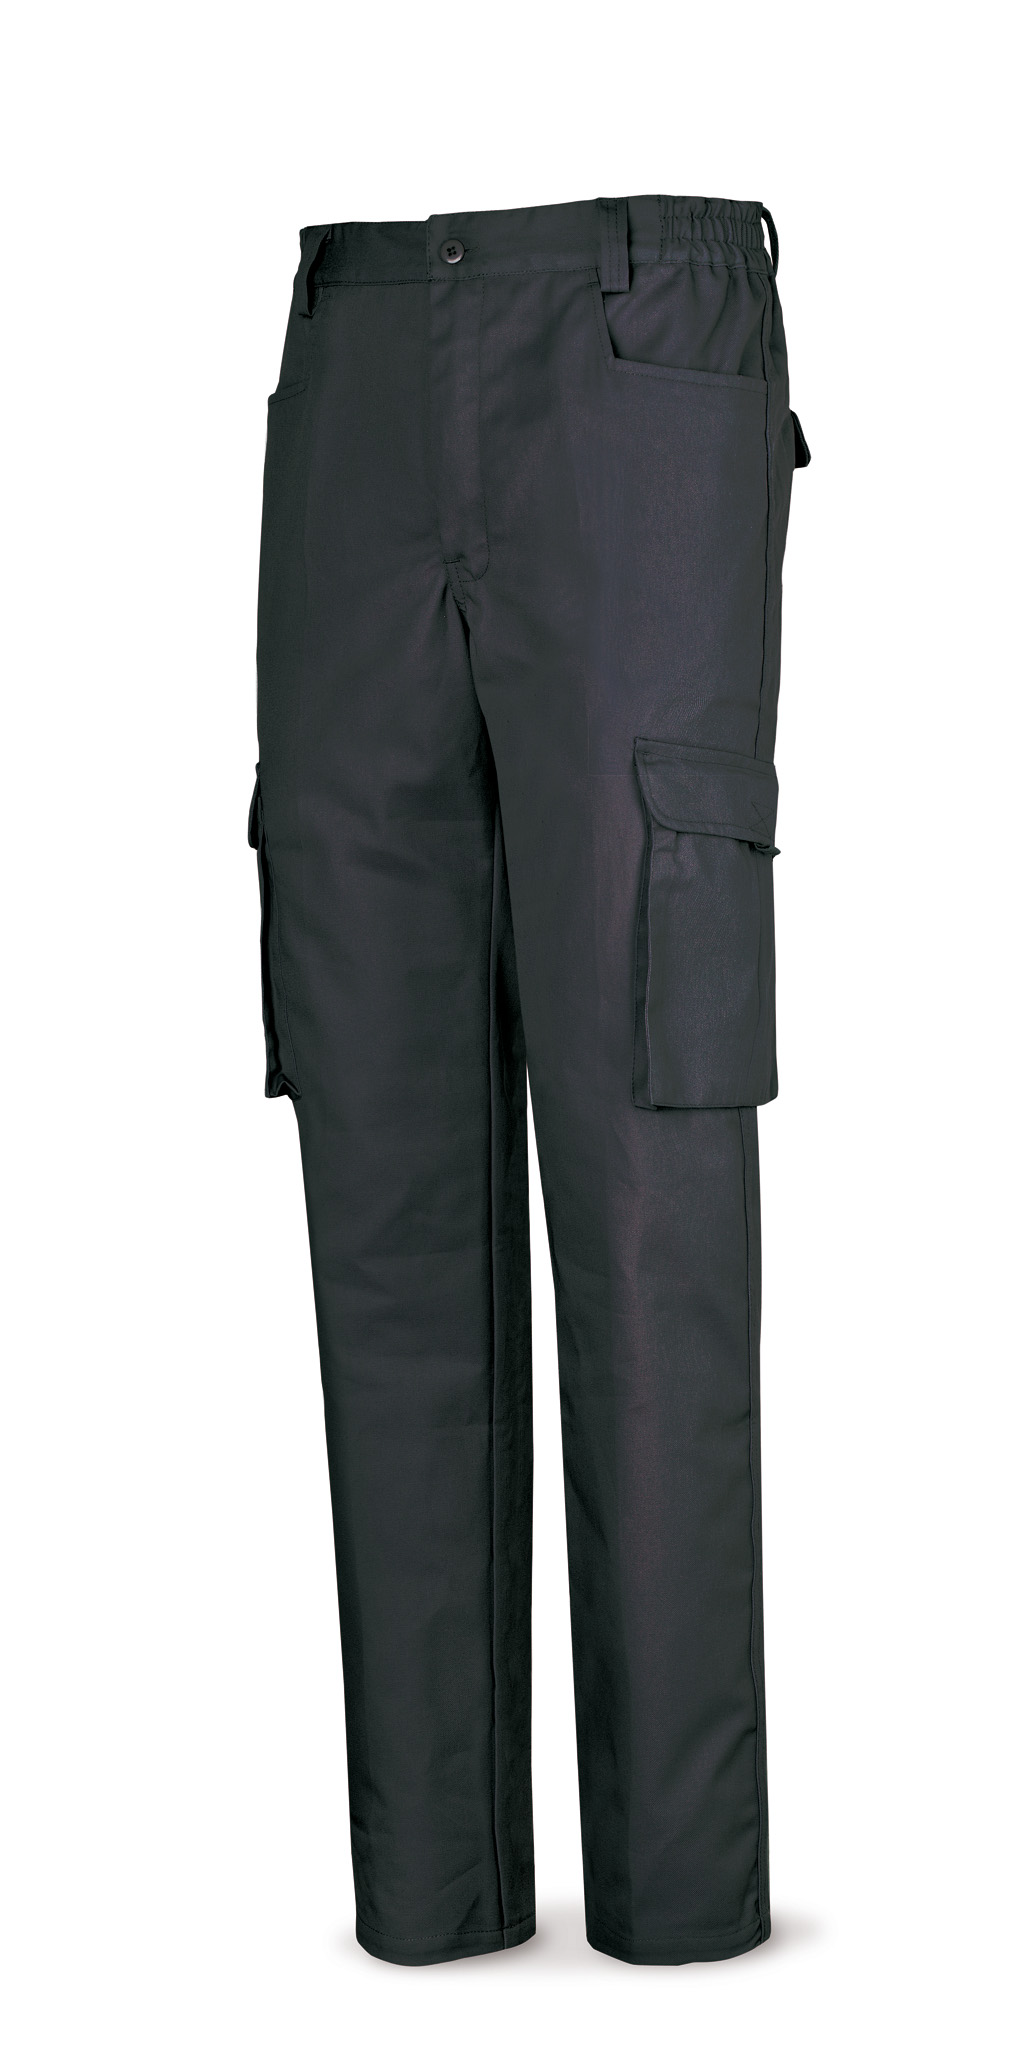 488-PN Top Vestuario Laboral Serie Top Pantalón negro poliester/algodón de 245 g. Multibolsillo